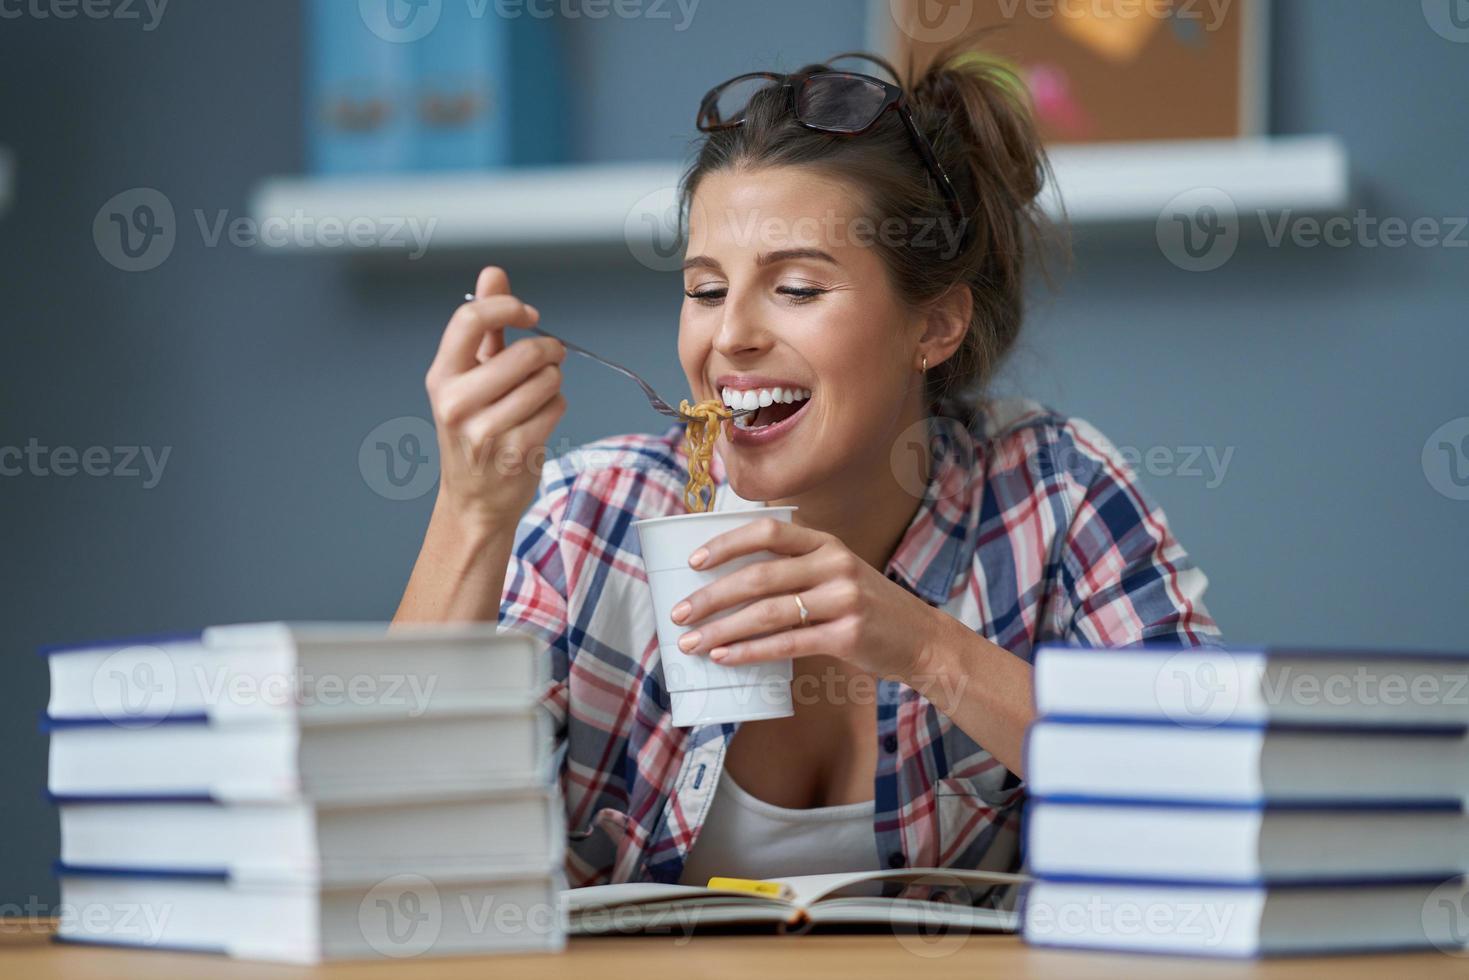 estudante com fome comendo macarrão enquanto aprende em casa foto